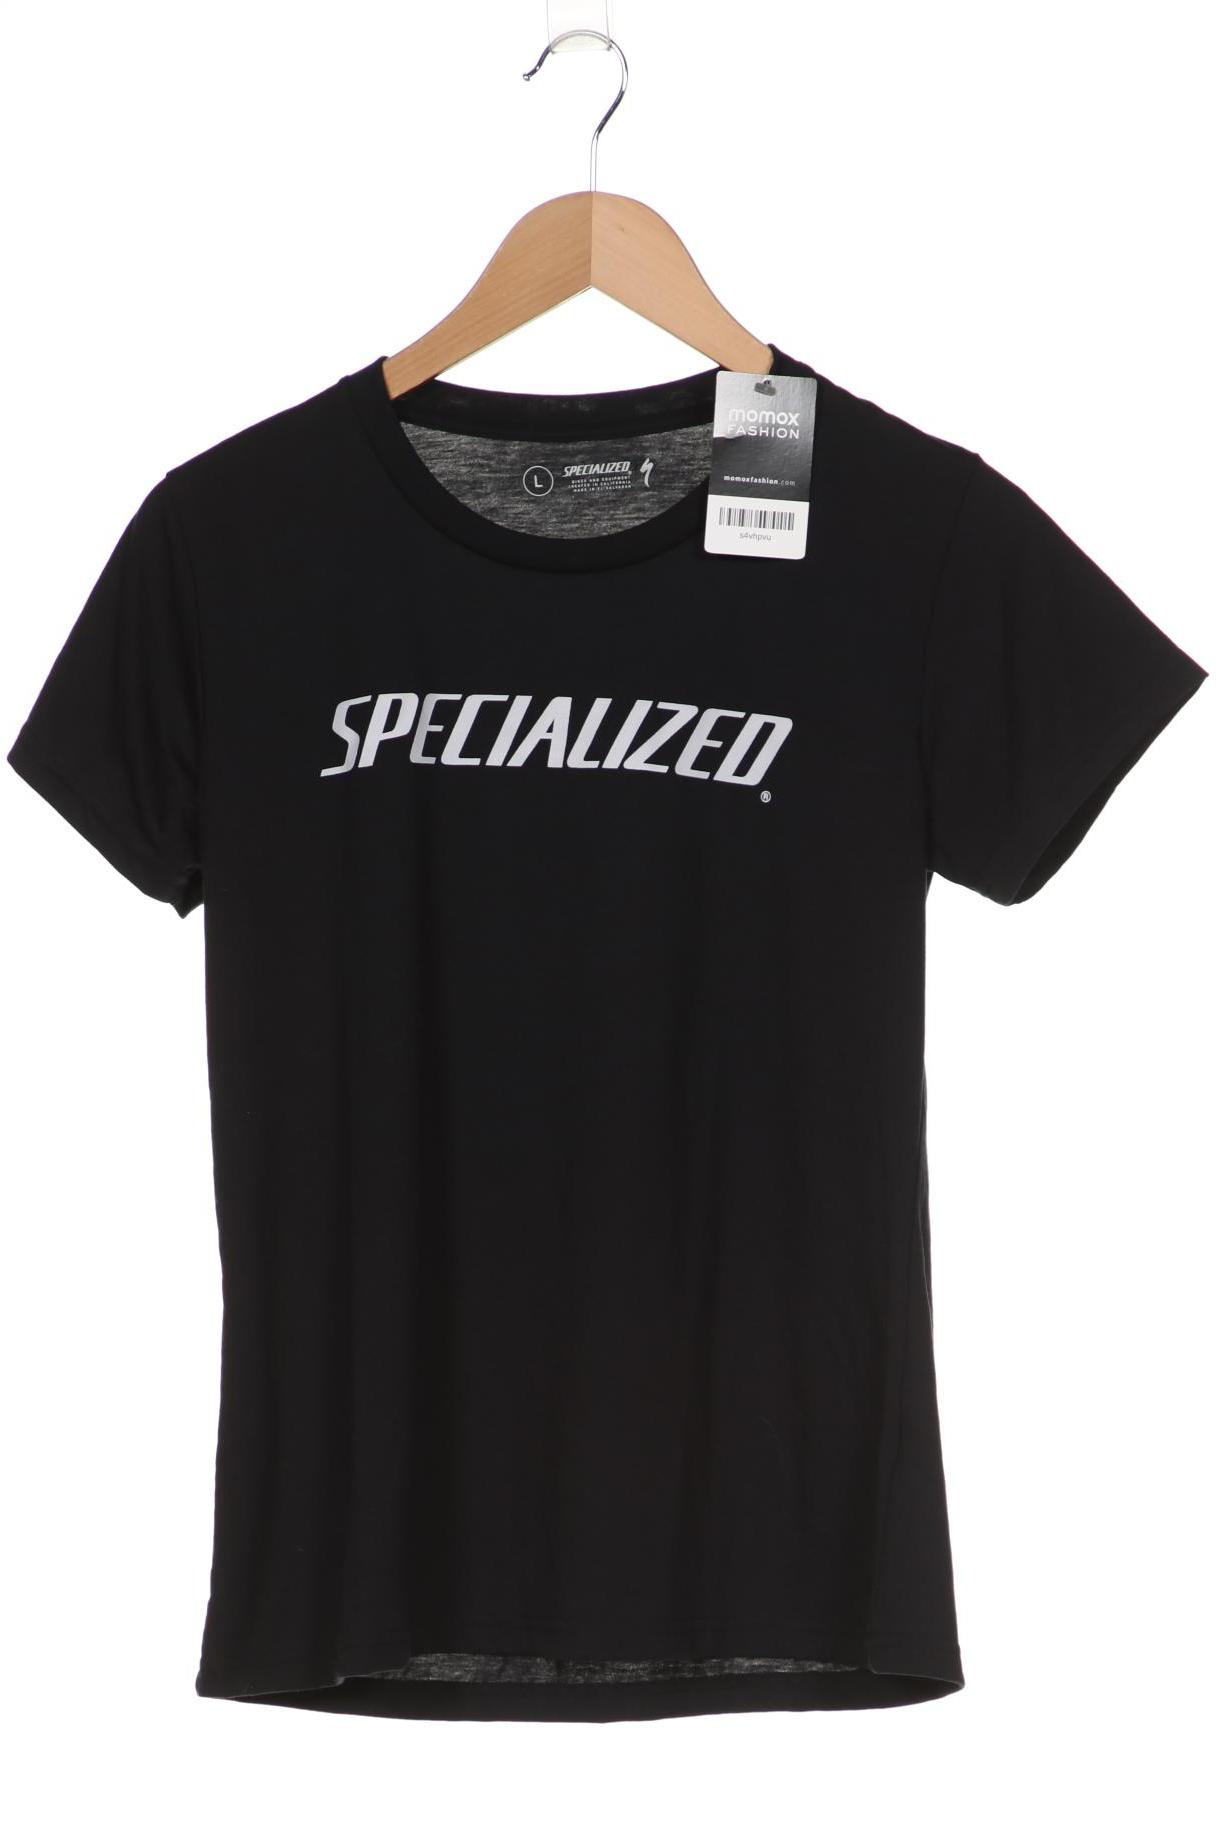 Specialized Damen T-Shirt, schwarz, Gr. 42 von Specialized